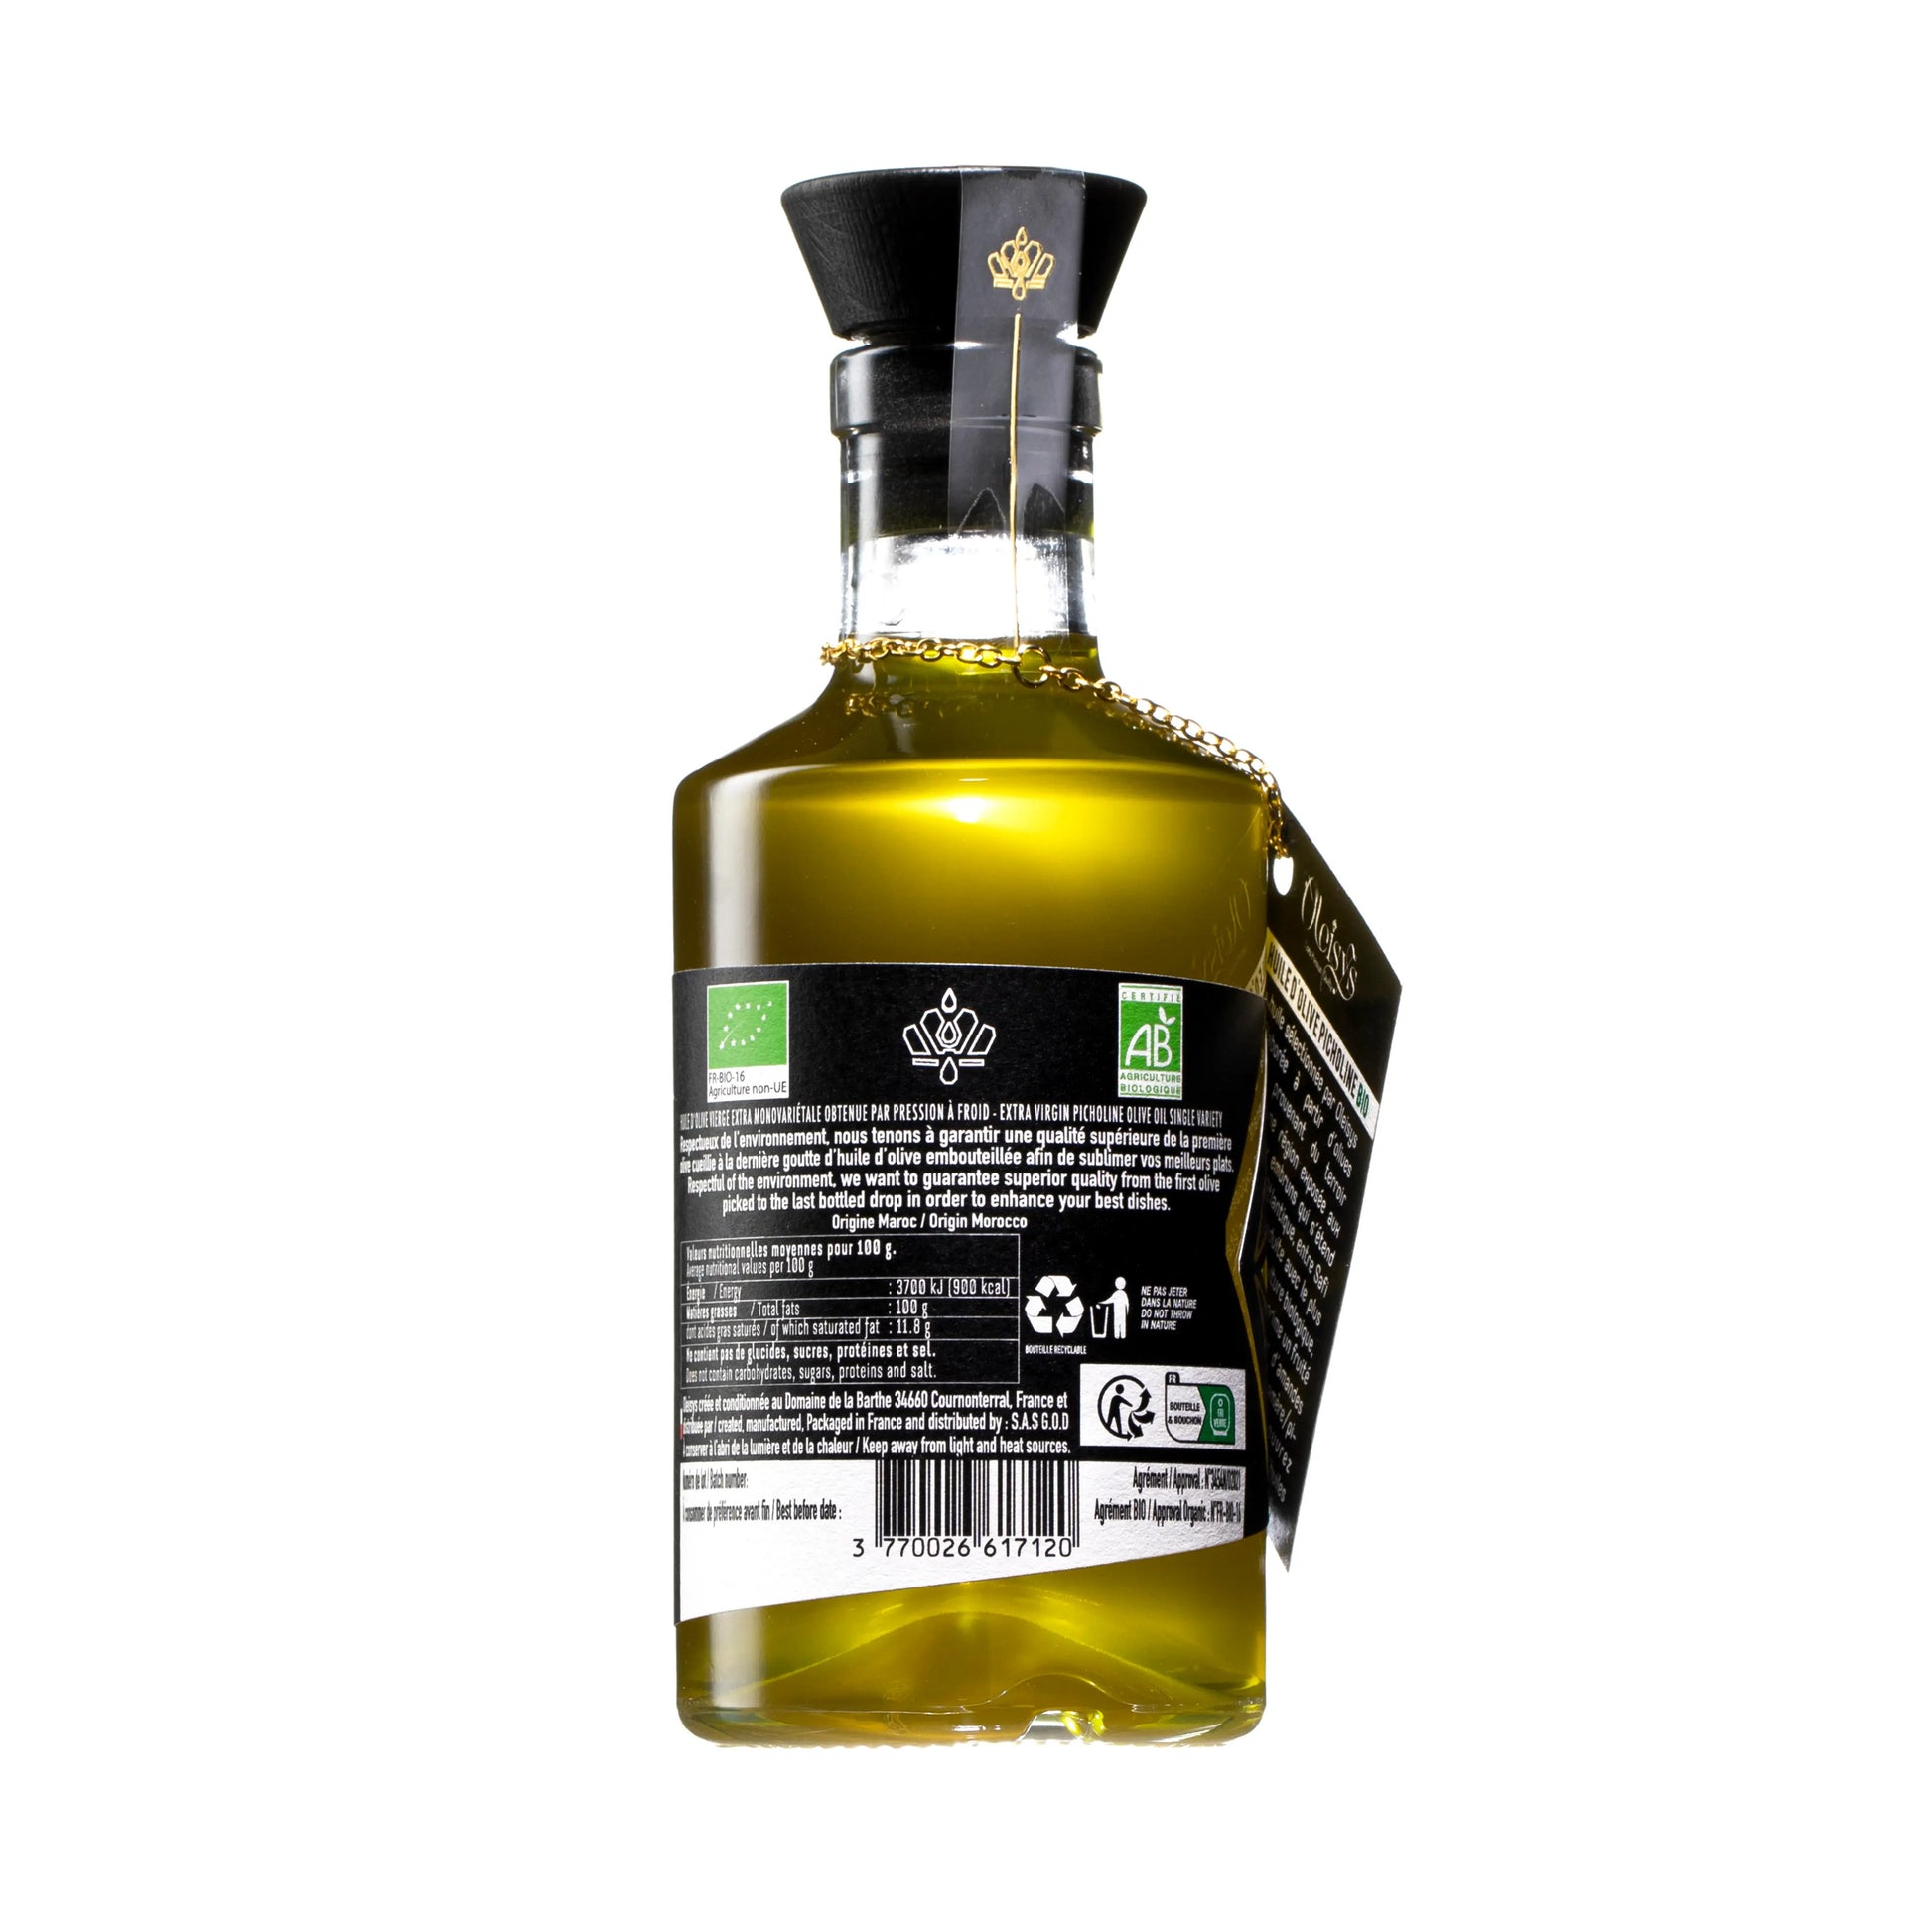 Oleisys Biologische extra vierge picholine olijfolie 200ml achterkant